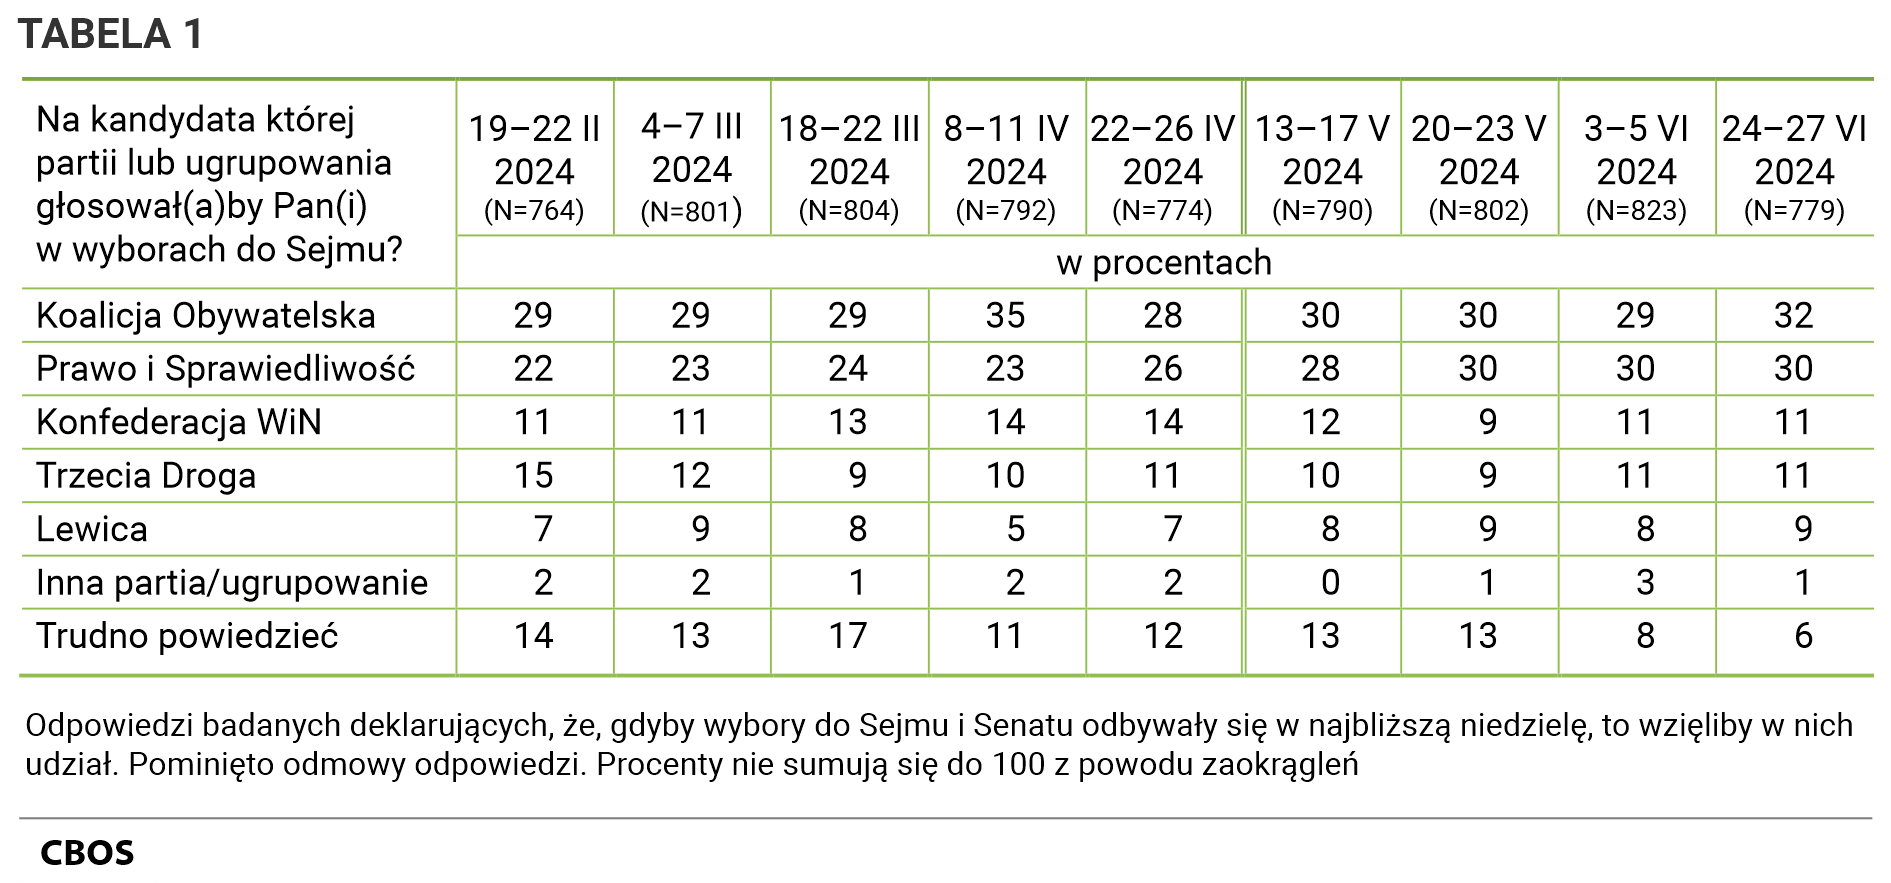 Tabela 1 Na kandydata której partii lub ugrupowania głosowałby Pan (głosowałaby Pani) w wyborach do Sejmu? Odpowiedzi według terminów badań. 19–22 lutego 2024 (N=764):  Koalicja Obywatelska - 29%, Prawo i Sprawiedliwość - 22%, Konfederacja WiN - 11%, Trzecia Droga - 15%, Lewica - 7%, Inna partia/ugrupowanie - 2%, Trudno powiedzieć - 14%.  4–7 marca 2024 (N=801): Koalicja Obywatelska - 29%, Prawo i Sprawiedliwość - 23%, Konfederacja WiN - 11%, Trzecia Droga - 12%, Lewica - 9%, Inna partia/ugrupowanie - 2%, Trudno powiedzieć - 13%.  18–22 marca 2024 (N=804): Koalicja Obywatelska - 29%, Prawo i Sprawiedliwość - 24%, Konfederacja WiN - 13%, Trzecia Droga - 9%, Lewica - 8%, Inna partia/ugrupowanie - 1%, Trudno powiedzieć - 17%.  8–11 kwietnia 2024 (N=792): Koalicja Obywatelska - 35%, Prawo i Sprawiedliwość - 23%, Konfederacja WiN - 14%, Trzecia Droga - 10%, Lewica - 5%, Inna partia/ugrupowanie - 2%, Trudno powiedzieć - 11%.  22–26 kwietnia 2024 (N=774): Koalicja Obywatelska - 28%, Prawo i Sprawiedliwość - 26%, Konfederacja WiN - 14%, Trzecia Droga - 11%, Lewica - 7%, Inna partia/ugrupowanie - 2%, Trudno powiedzieć - 12%.  13–17 maja 2024 (N=790): Koalicja Obywatelska - 30%, Prawo i Sprawiedliwość - 28%, Konfederacja WiN - 12%, Trzecia Droga - 10%, Lewica - 8%, Inna partia/ugrupowanie - 0%, Trudno powiedzieć - 13%.  20–23 maja 2024 (N=802): Koalicja Obywatelska - 30%, Prawo i Sprawiedliwość - 30%, Konfederacja WiN - 9%, Trzecia Droga - 9%, Lewica - 9%, Inna partia/ugrupowanie - 1%, Trudno powiedzieć - 13%.  3–5 czerwca 2024 (N=823): Koalicja Obywatelska - 29%, Prawo i Sprawiedliwość - 30%, Konfederacja WiN - 11%, Trzecia Droga - 11%, Lewica - 8%, Inna partia/ugrupowanie - 3%, Trudno powiedzieć - 8%. 24–27 czerwca 2024 (N=779): Koalicja Obywatelska - 32%, Prawo i Sprawiedliwość - 30%, Konfederacja WiN - 11%, Trzecia Droga - 11%, Lewica - 9%, Inna partia/ugrupowanie - 1%, Trudno powiedzieć - 6%.